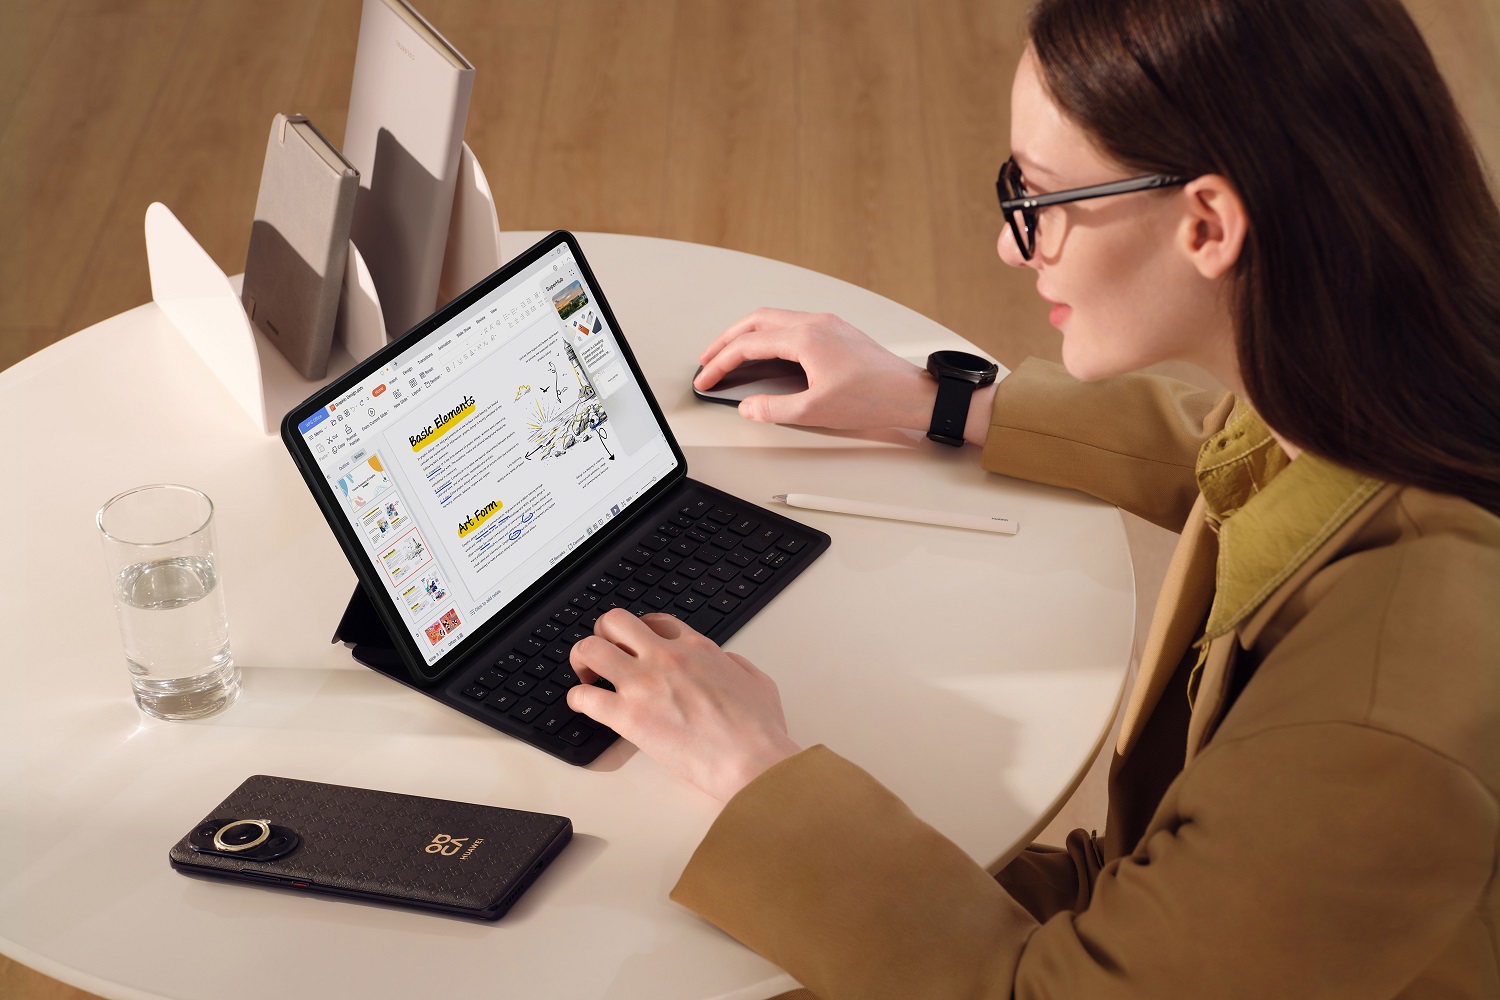 HUAWEI MatePad 11.5 inch, tiện-lợi-hiệu quả cho văn phòng thông minh - HUAWEI MatePad 11.5  5